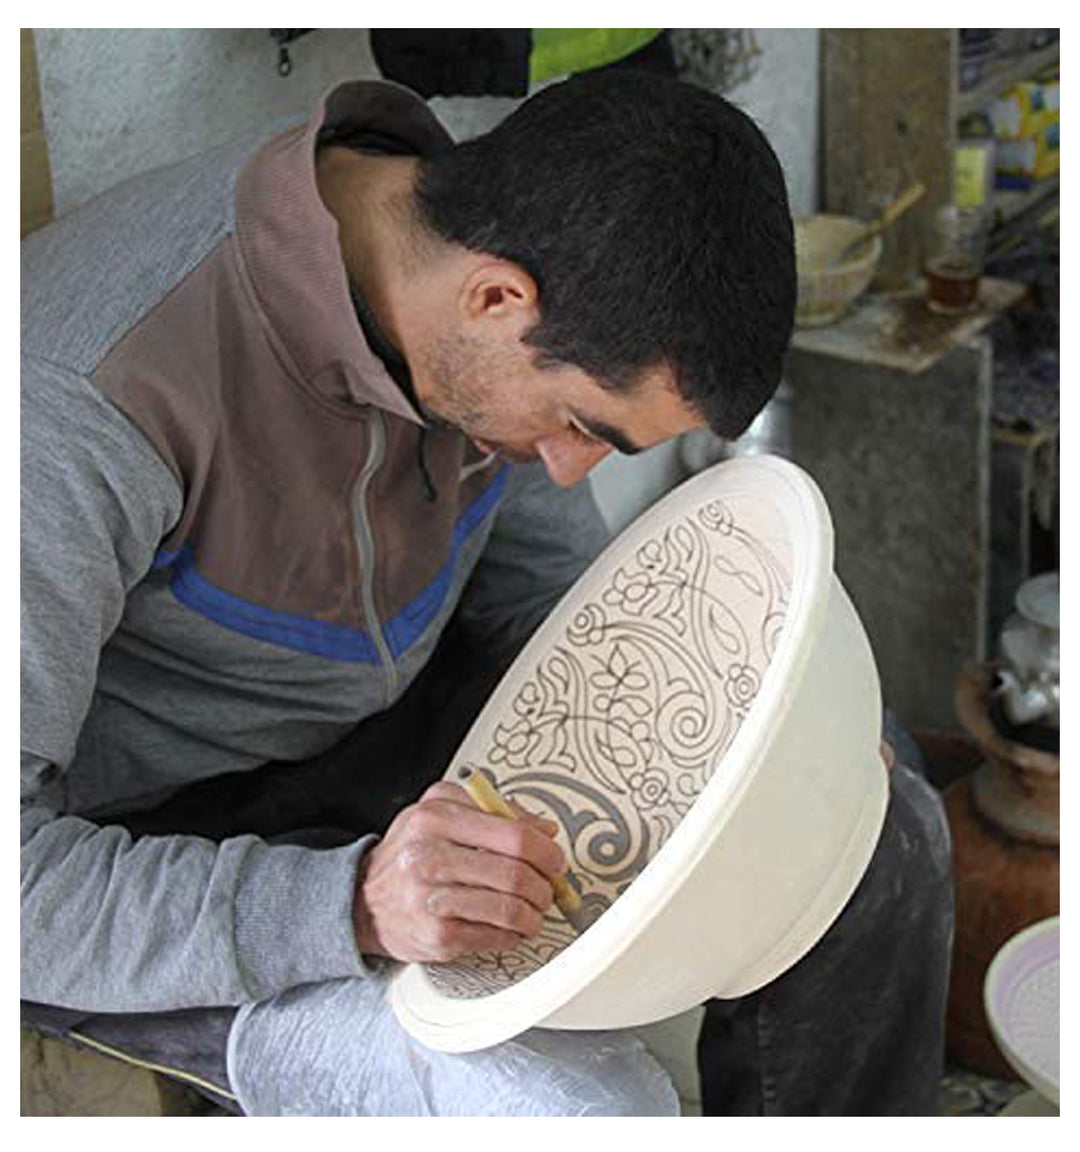 Orientalisches Handbemaltes Keramik-Waschbecken Fes19